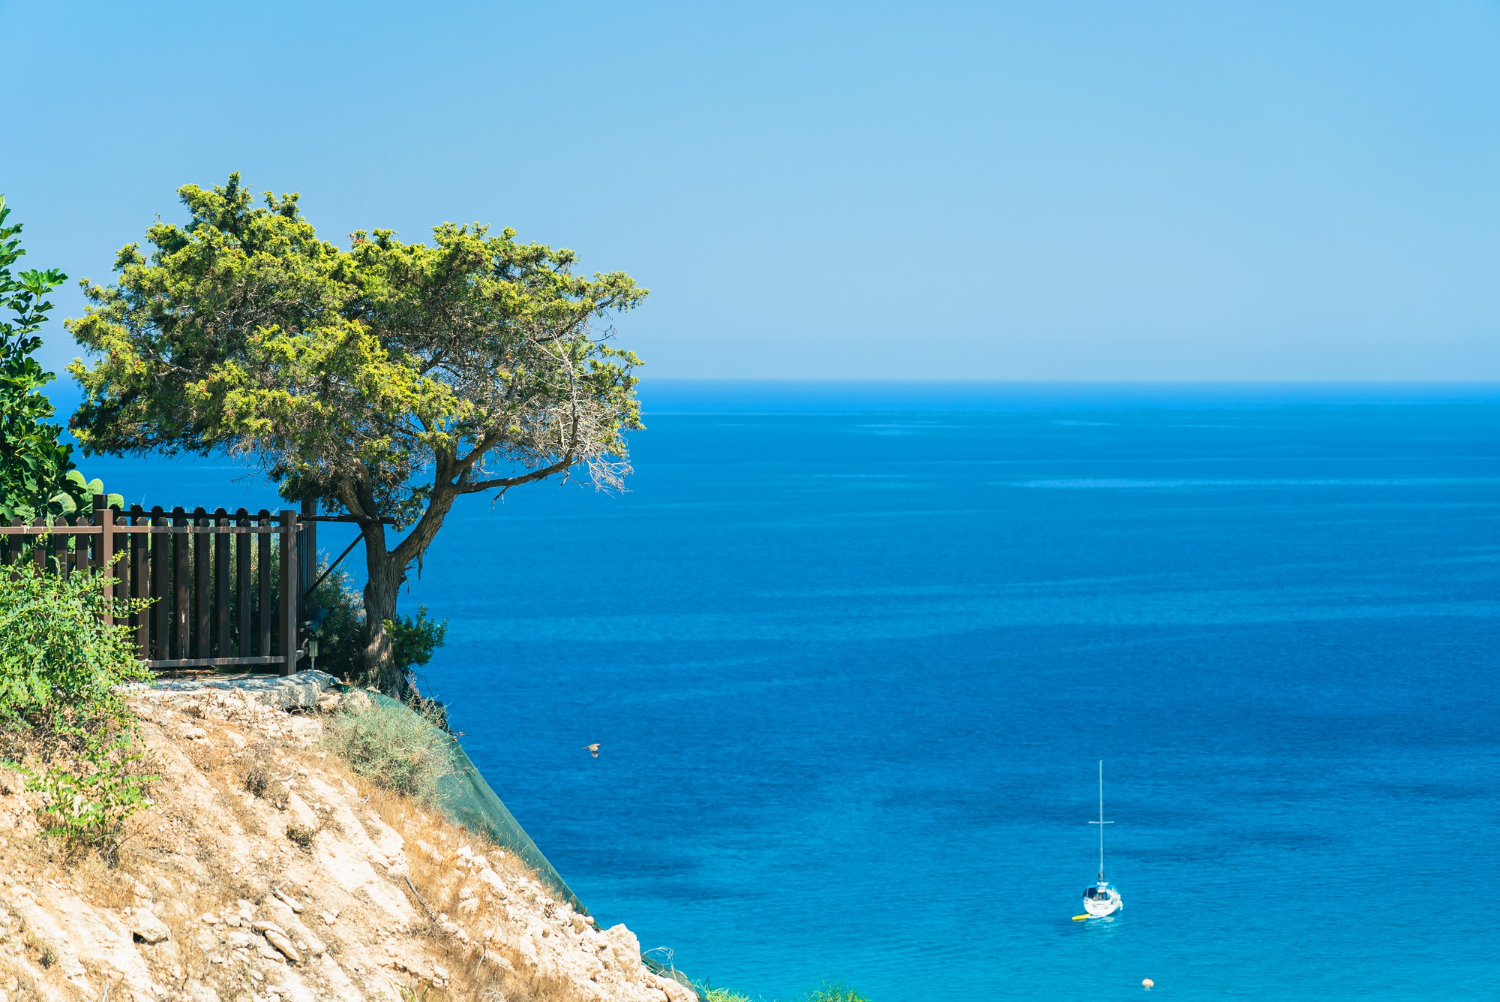 beautiful olive tree cliff bright blue sea with boat near cape greco cyprus island mediterranean sea